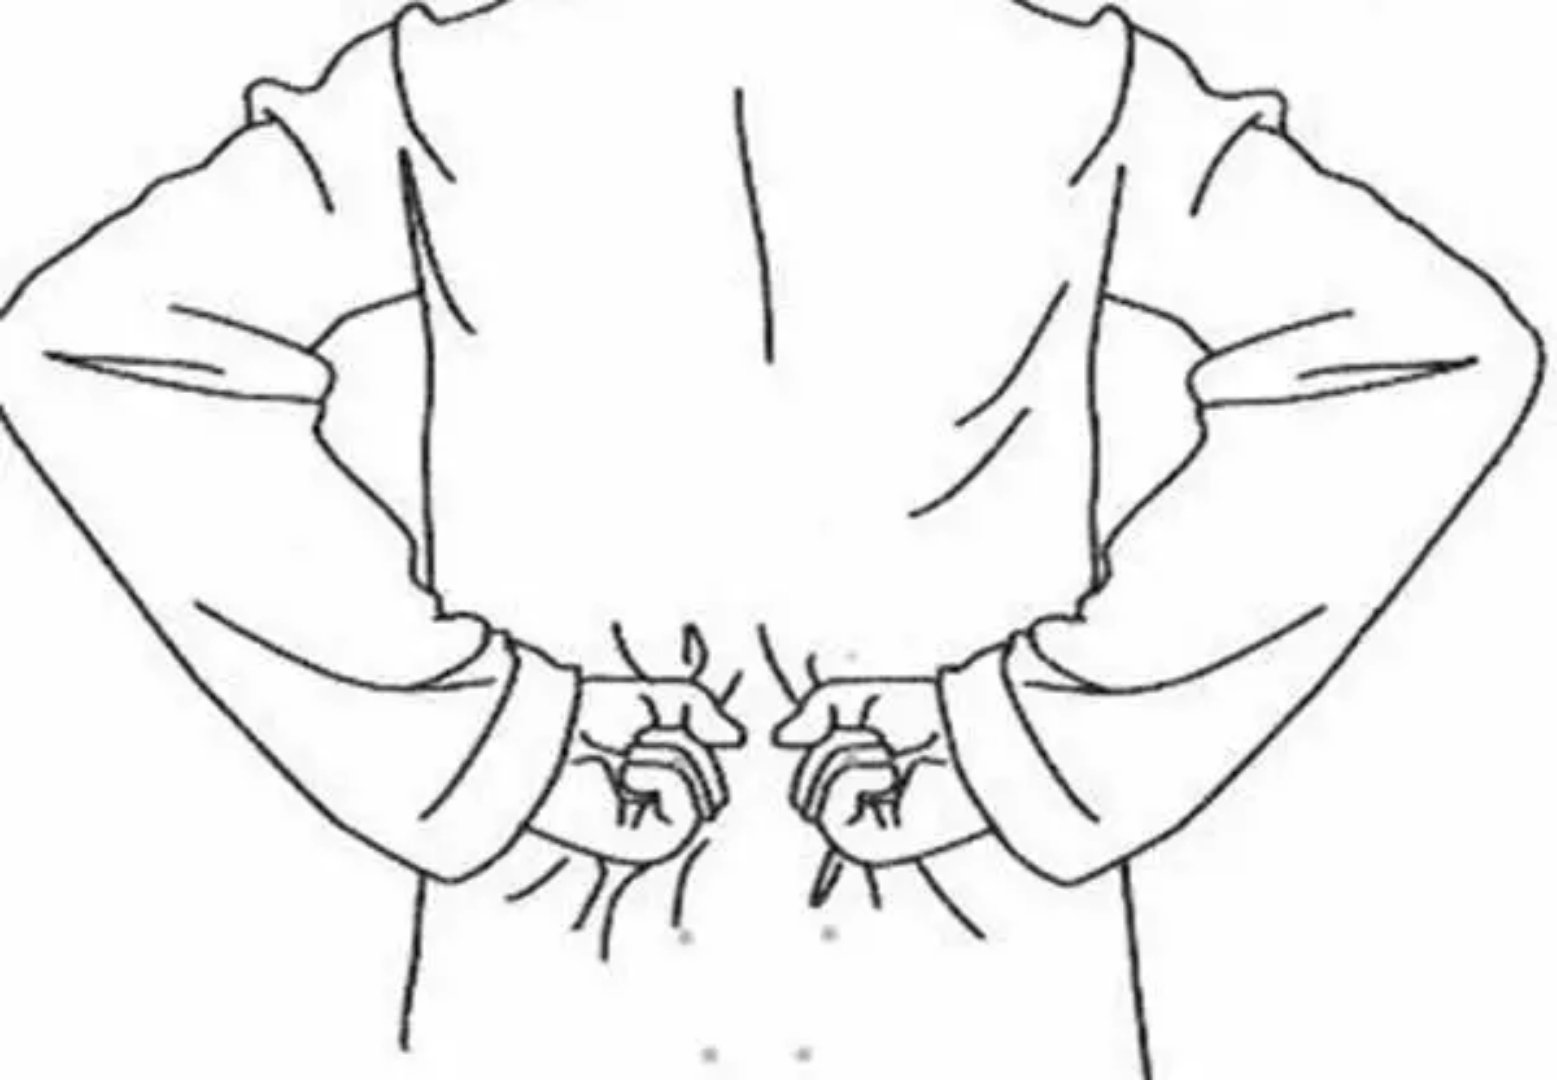 人的腰子位置示意图-图库-五毛网